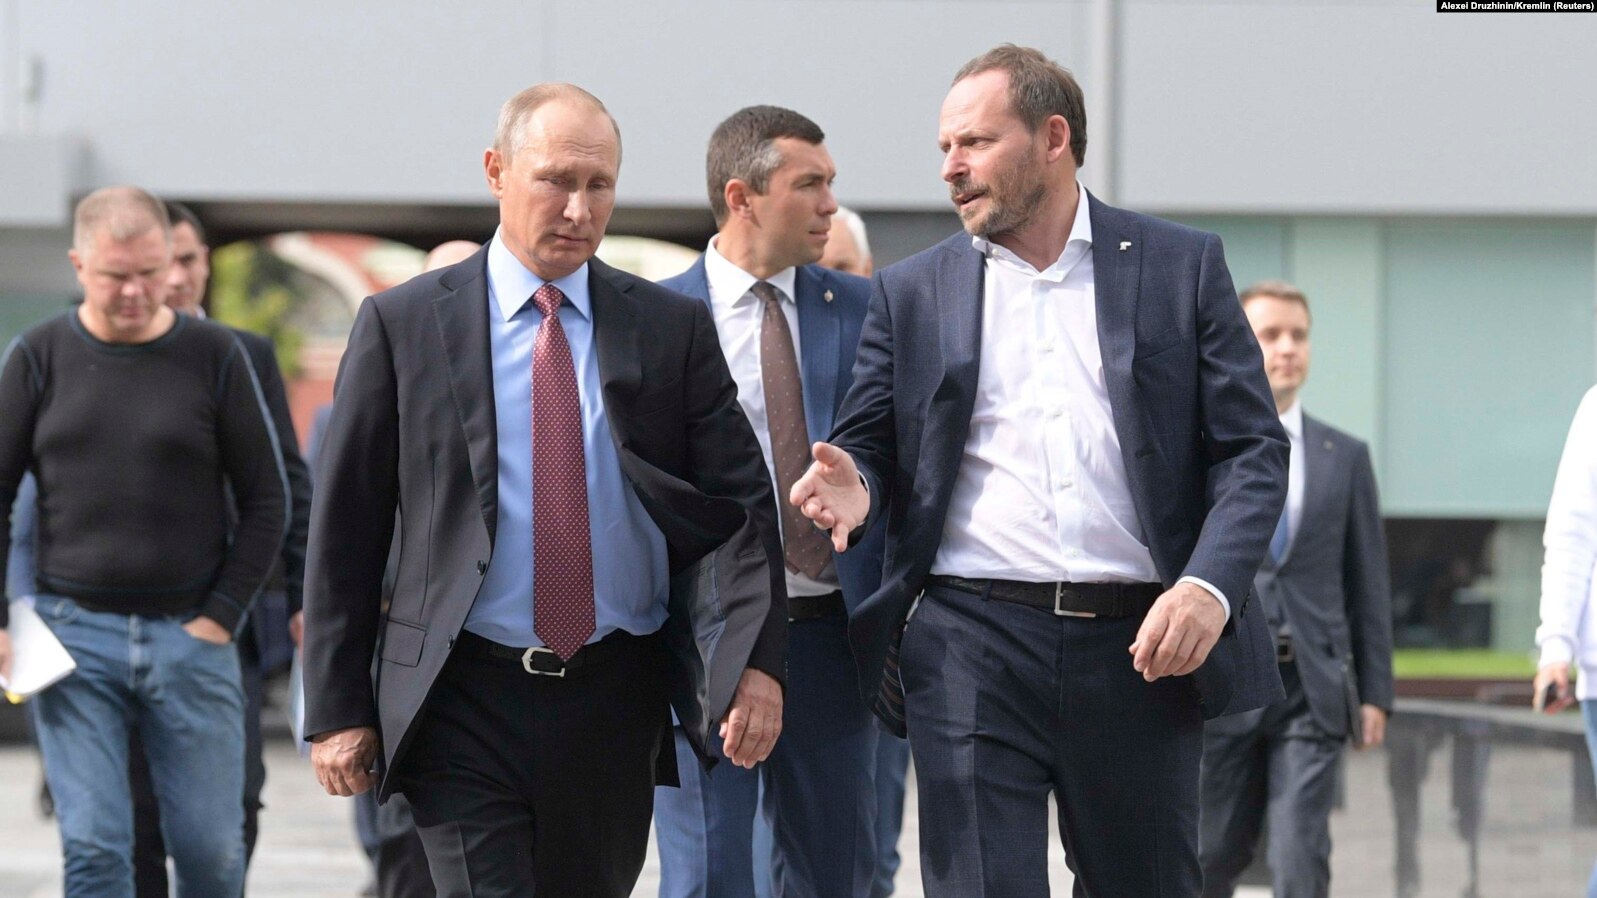 Russian sanctions: Finland seizes billionaire ‘Maltese’ citizen’s assets